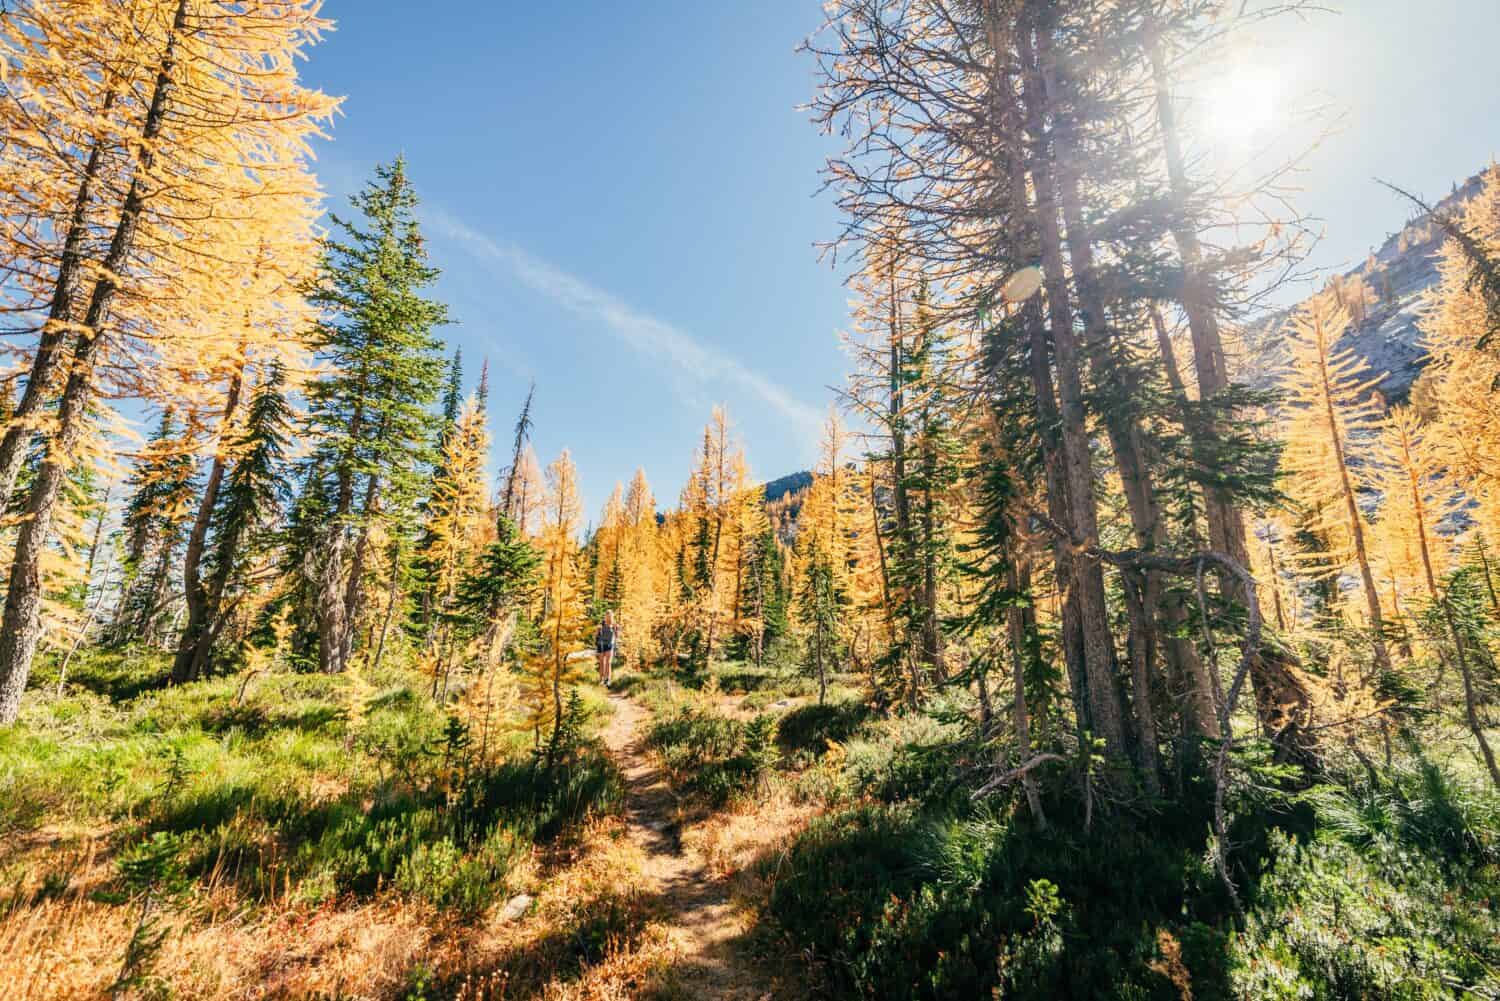 Un escursionista arriva lungo un sentiero fiancheggiato da larici dorati in autunno.  Uno degli alberi più iconici originari del Montana. 